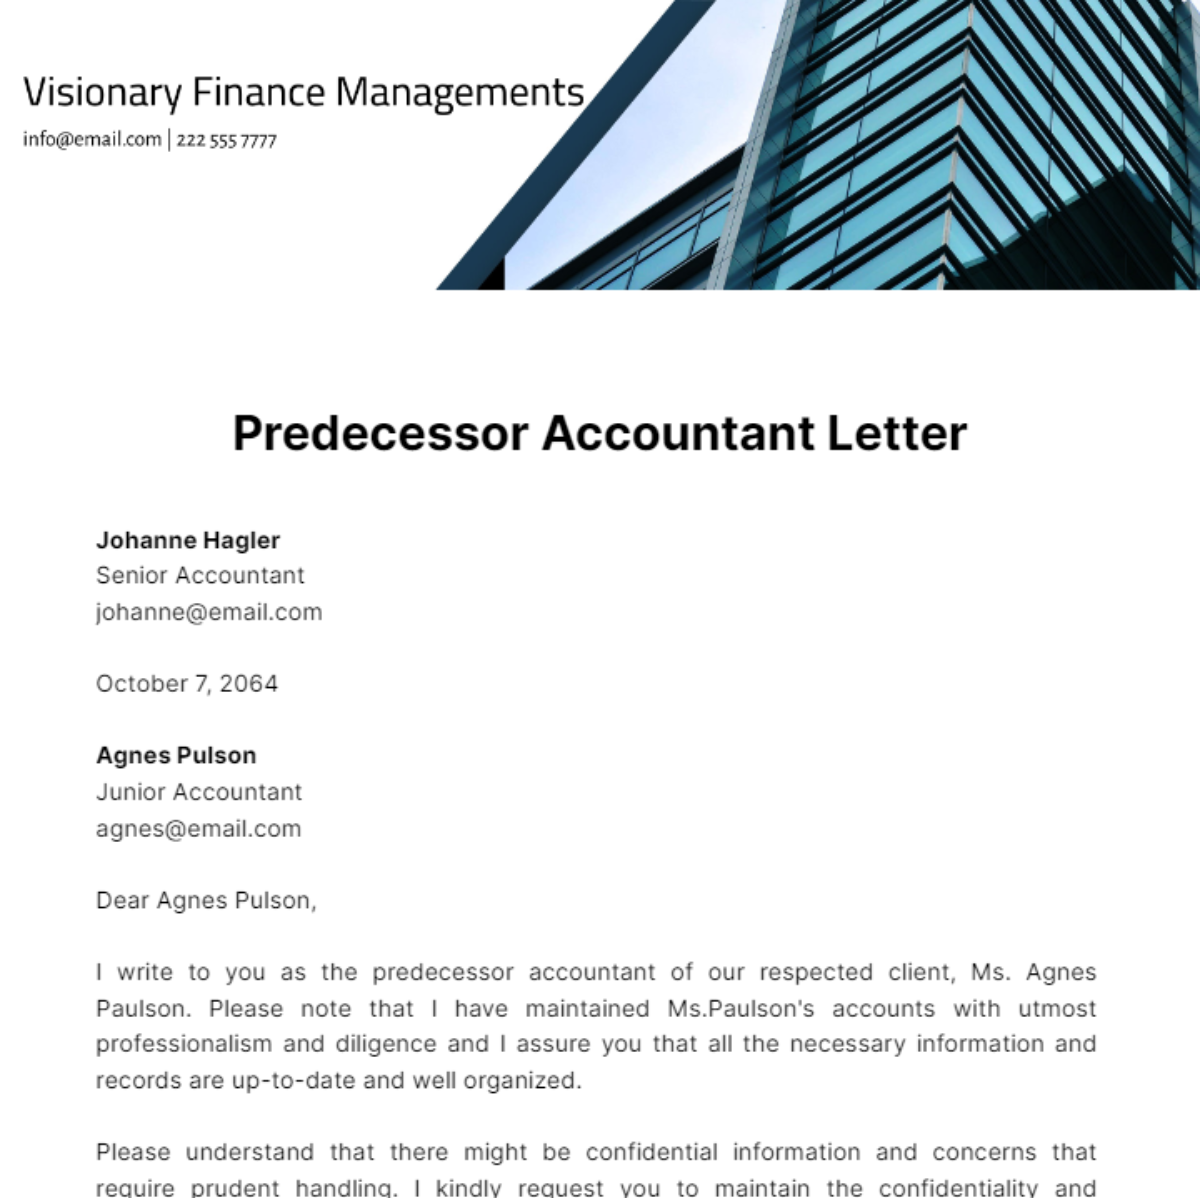 Predecessor Accountant Letter Template